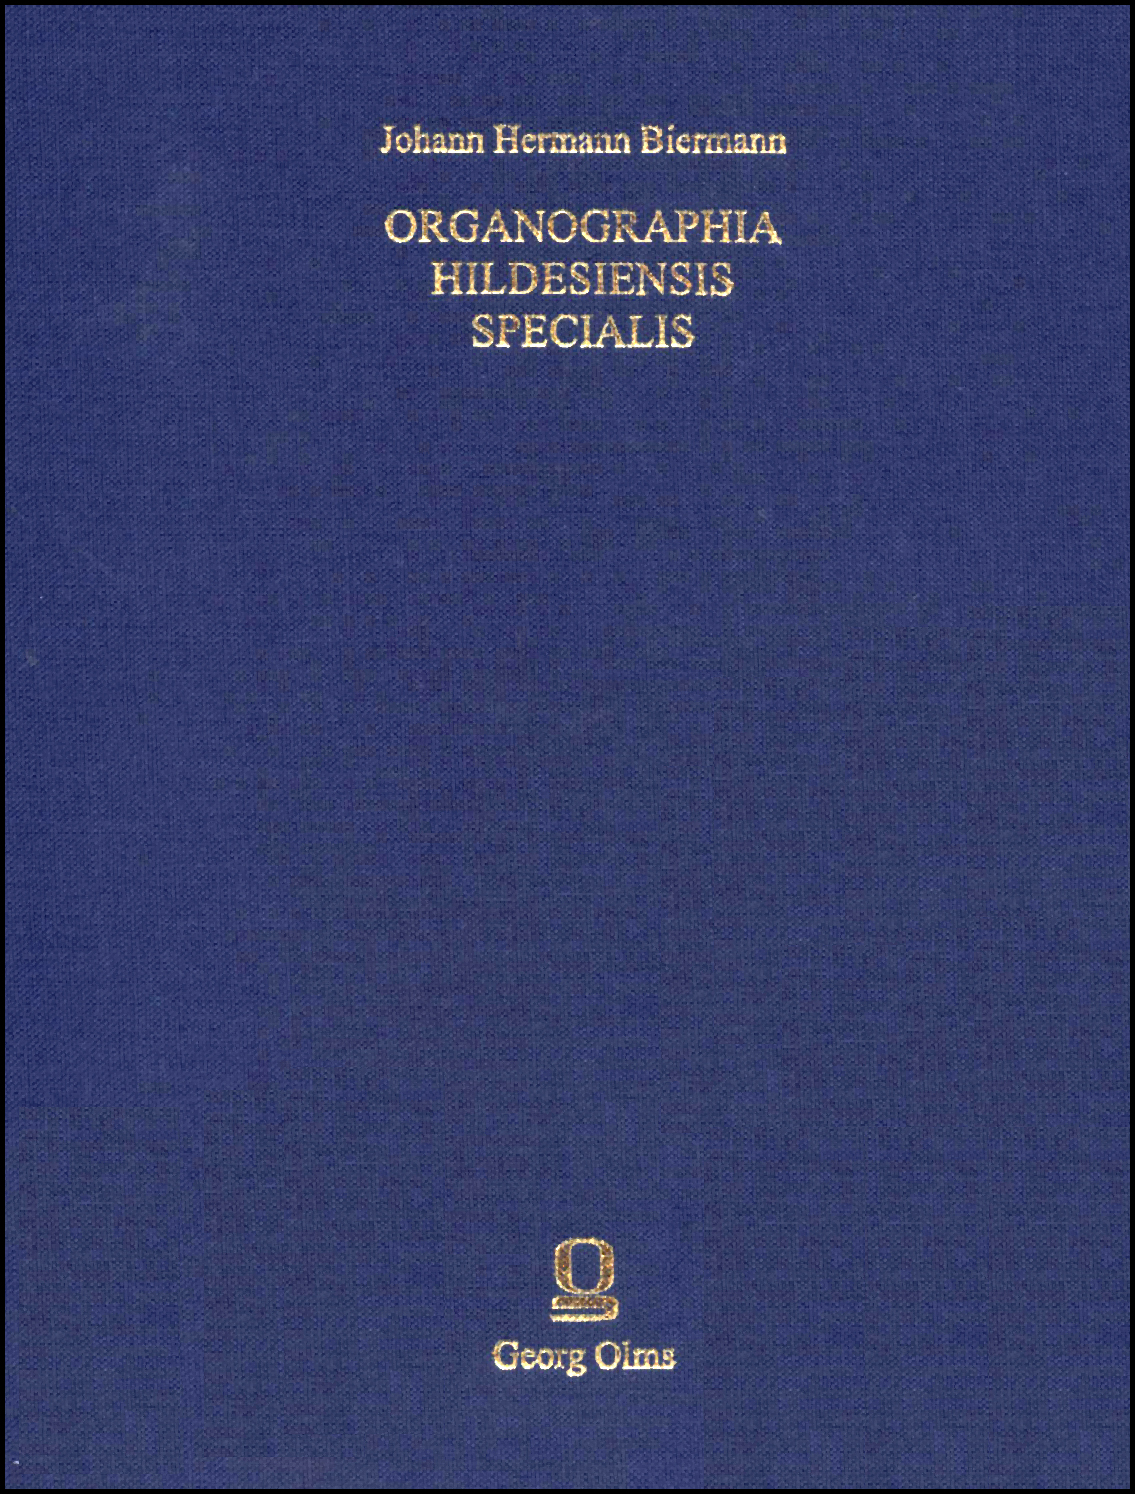 Organographia Hildesiensis specialis, Hildesheim 1738, Originalgetreuer Nachdruck mit einem Anhang neu herausgegeben von Uwe Pape. - Biermann, Johann Hermann